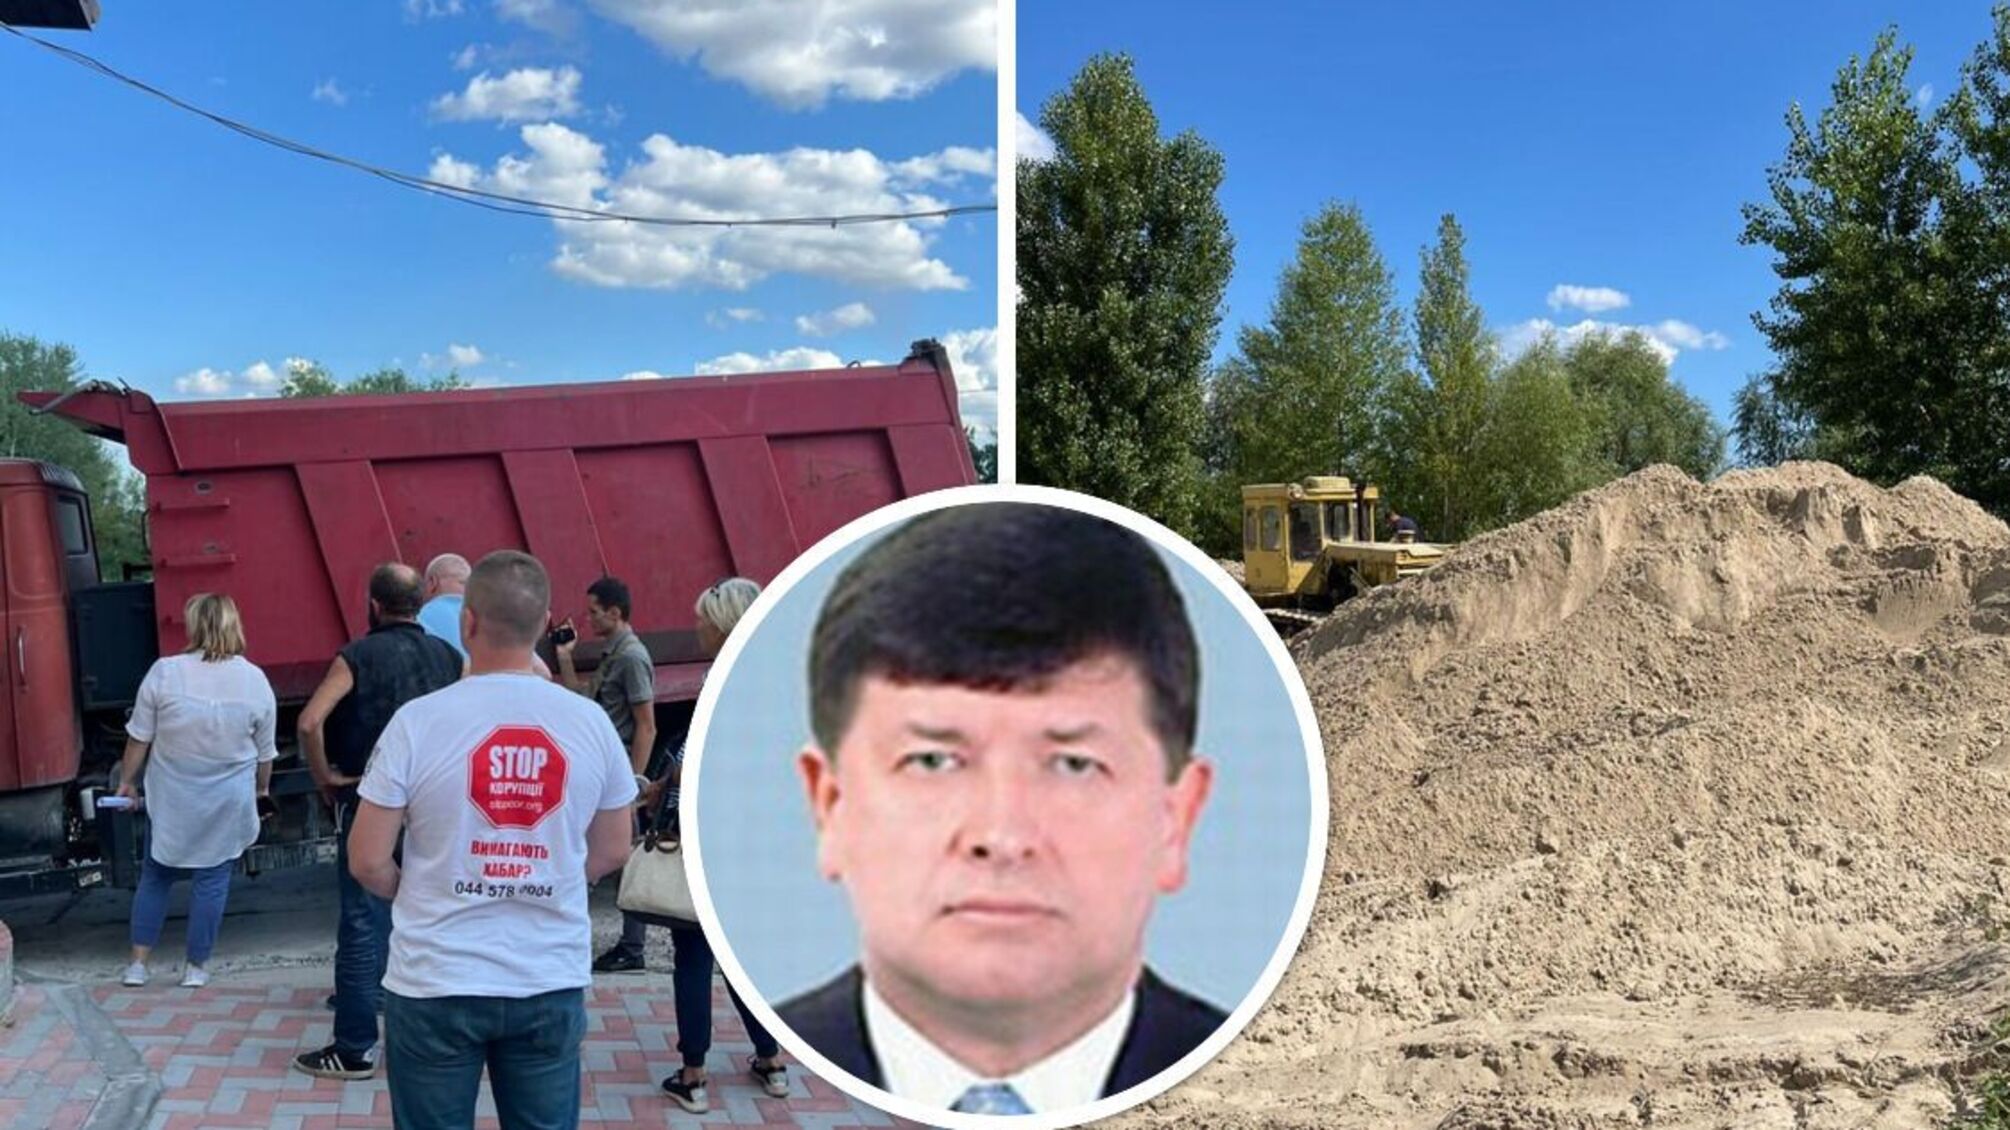 Хищение песка в Конча-Заспе: полиция провела обыск на 'точке' экс-нардепа Малича, следующий этап – арест